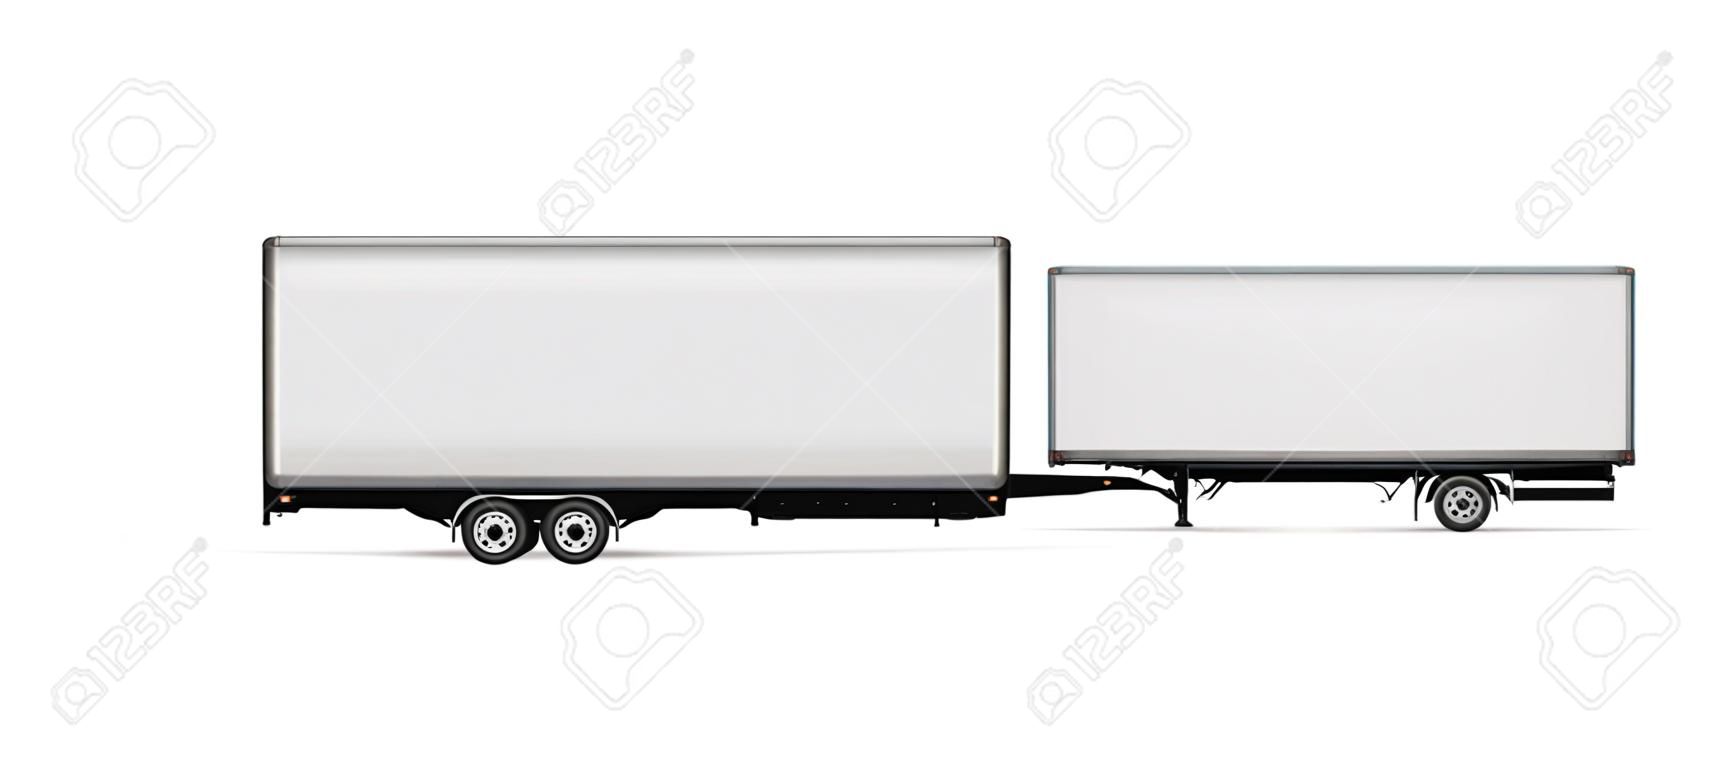 Modello di vettore del camion del semirimorchio. Autocarro isolato con rimorchio su bianco per il marchio del veicolo, identità aziendale. Tutti gli elementi nei gruppi su livelli separati per una facile modifica e ricolorazione